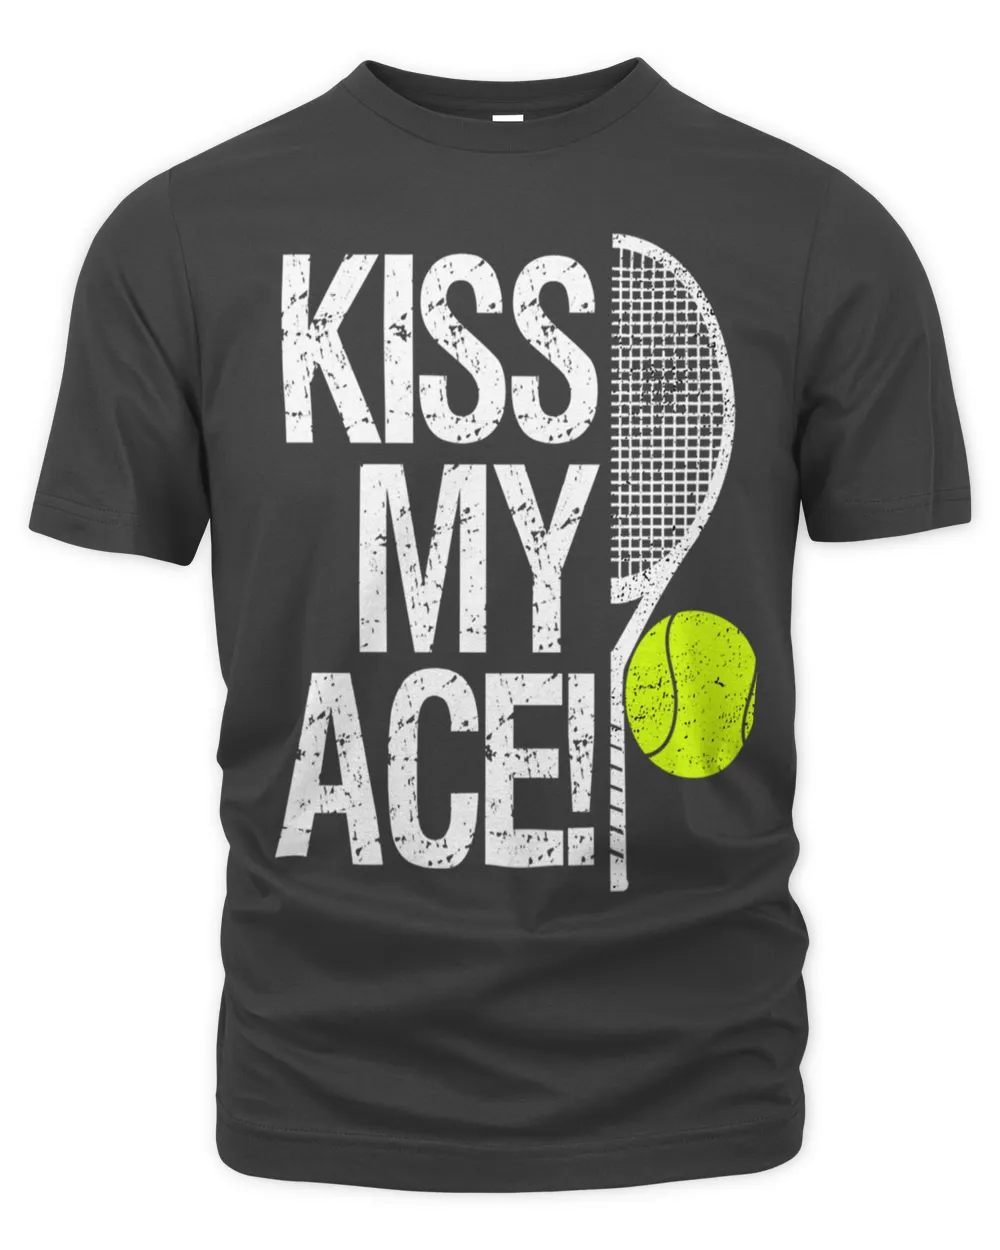 Kiss my ace